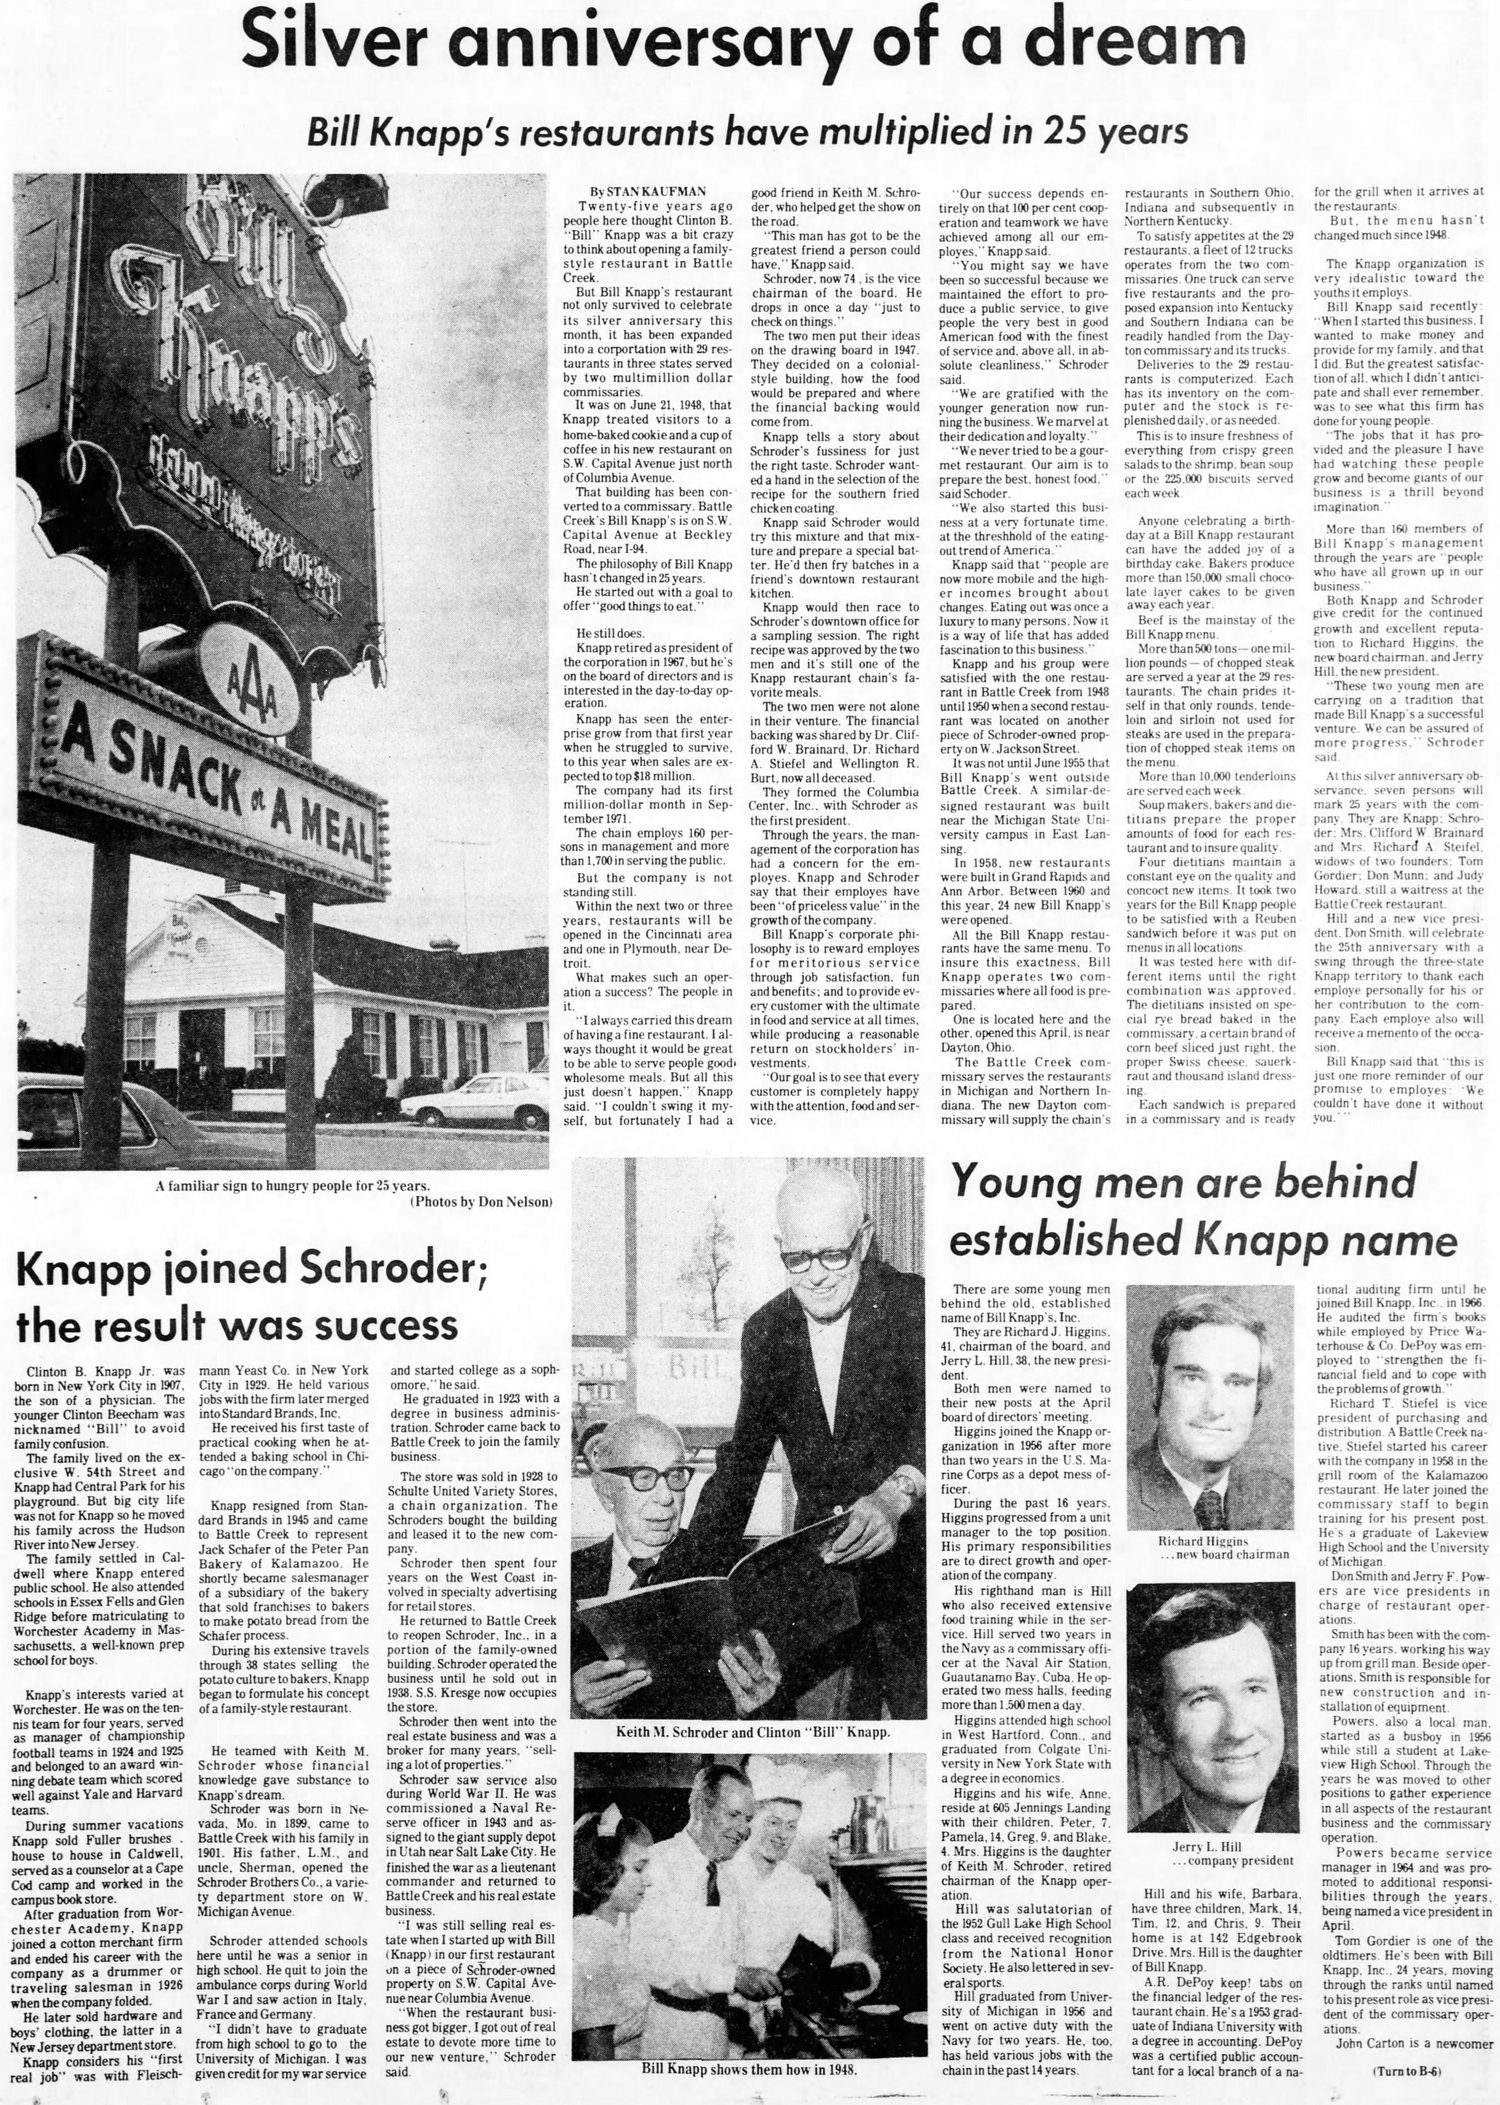 Bill Knapps - Jun 24 1973 Feature Article